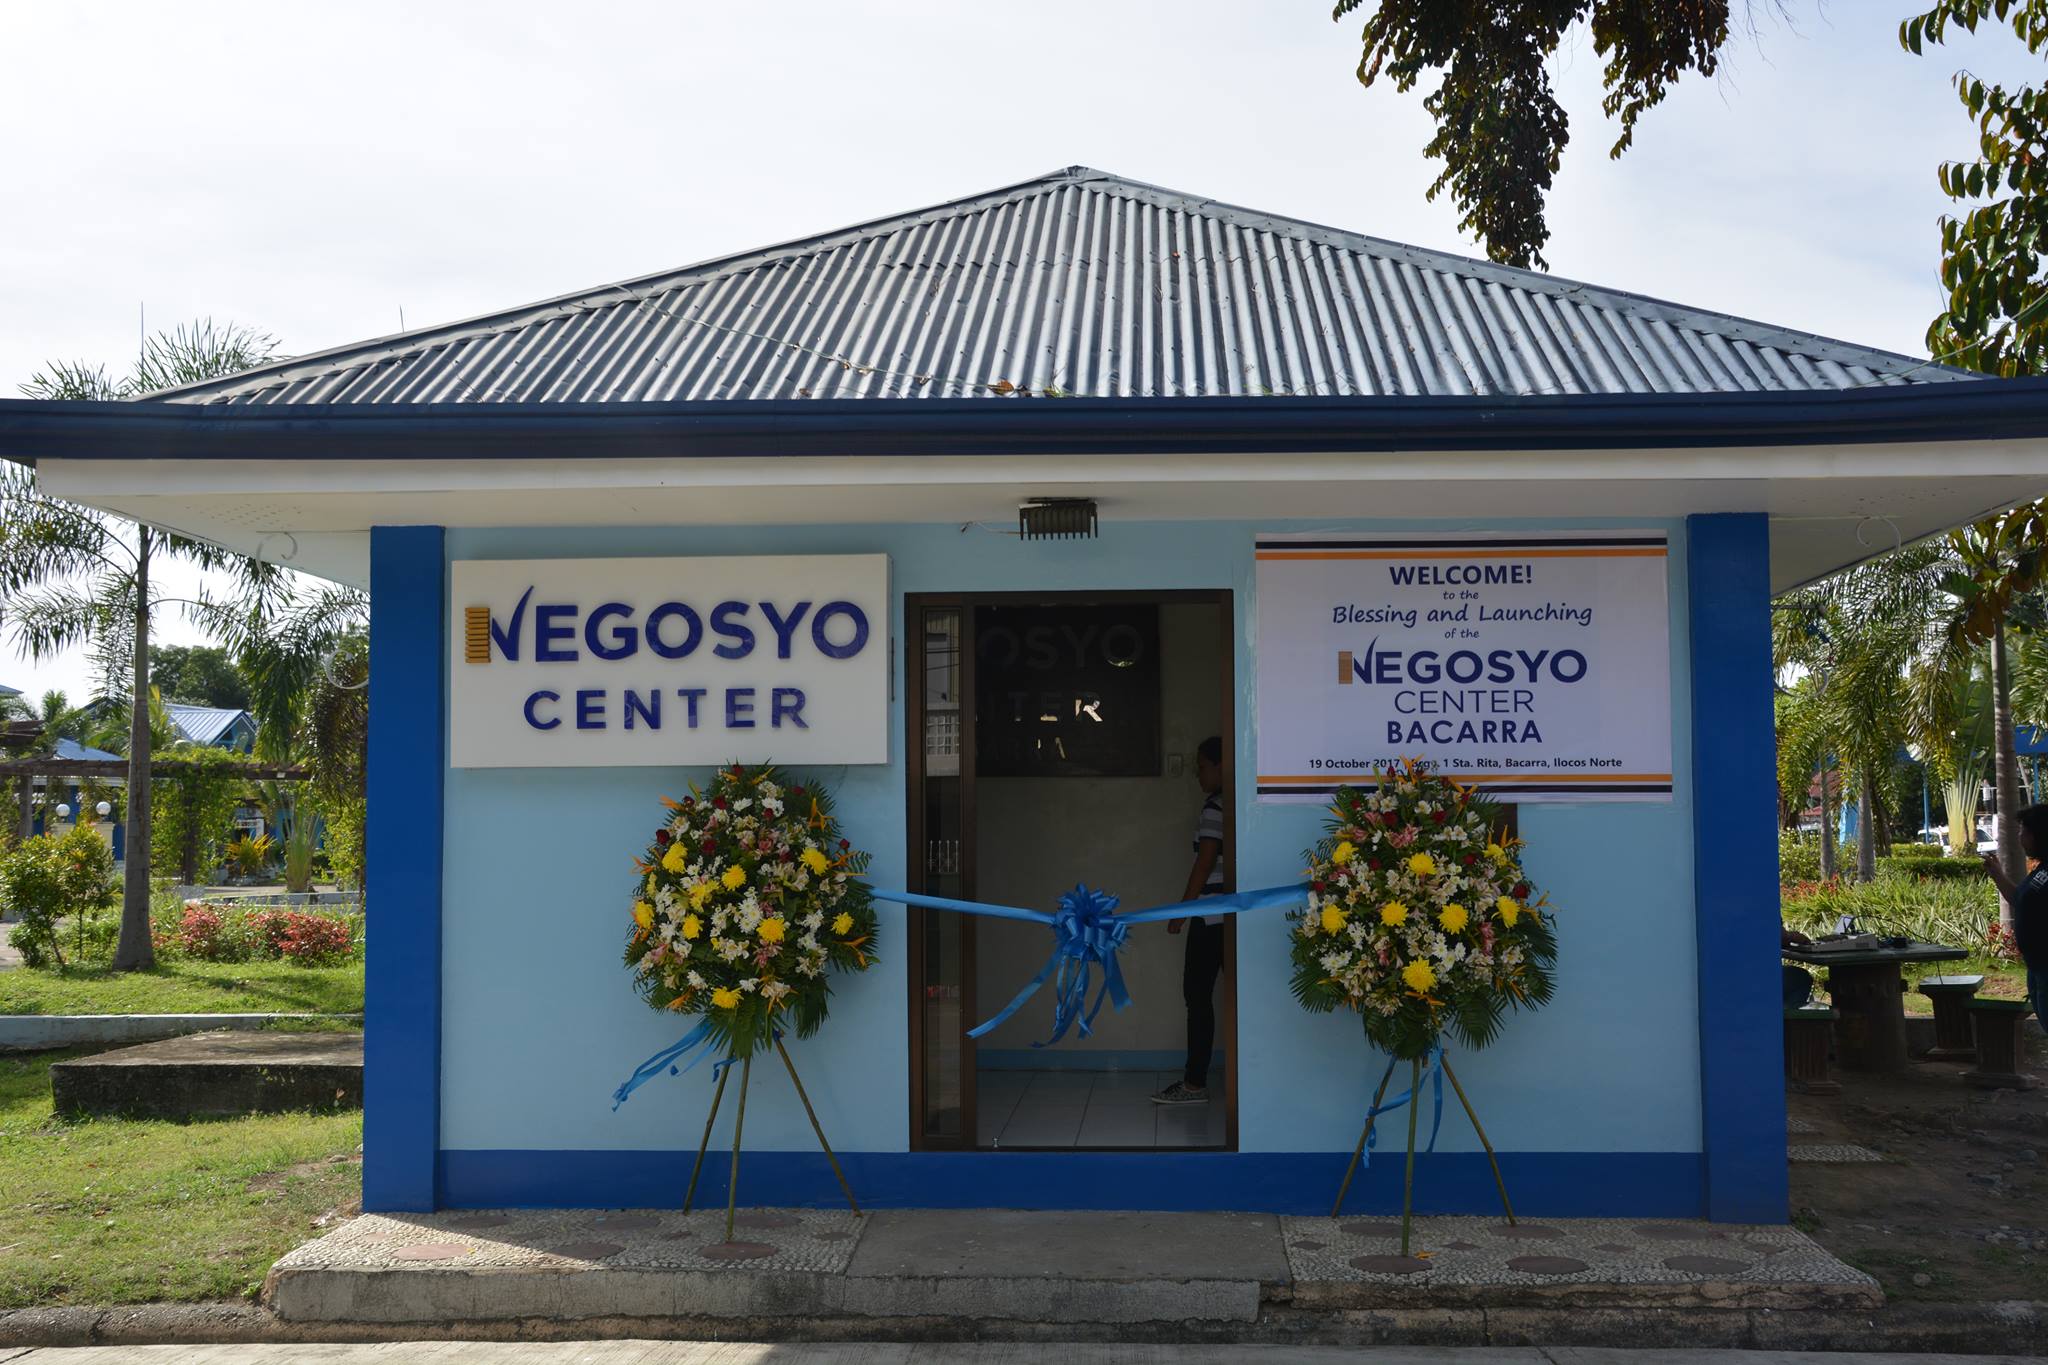 Negosyo Center Bacarra